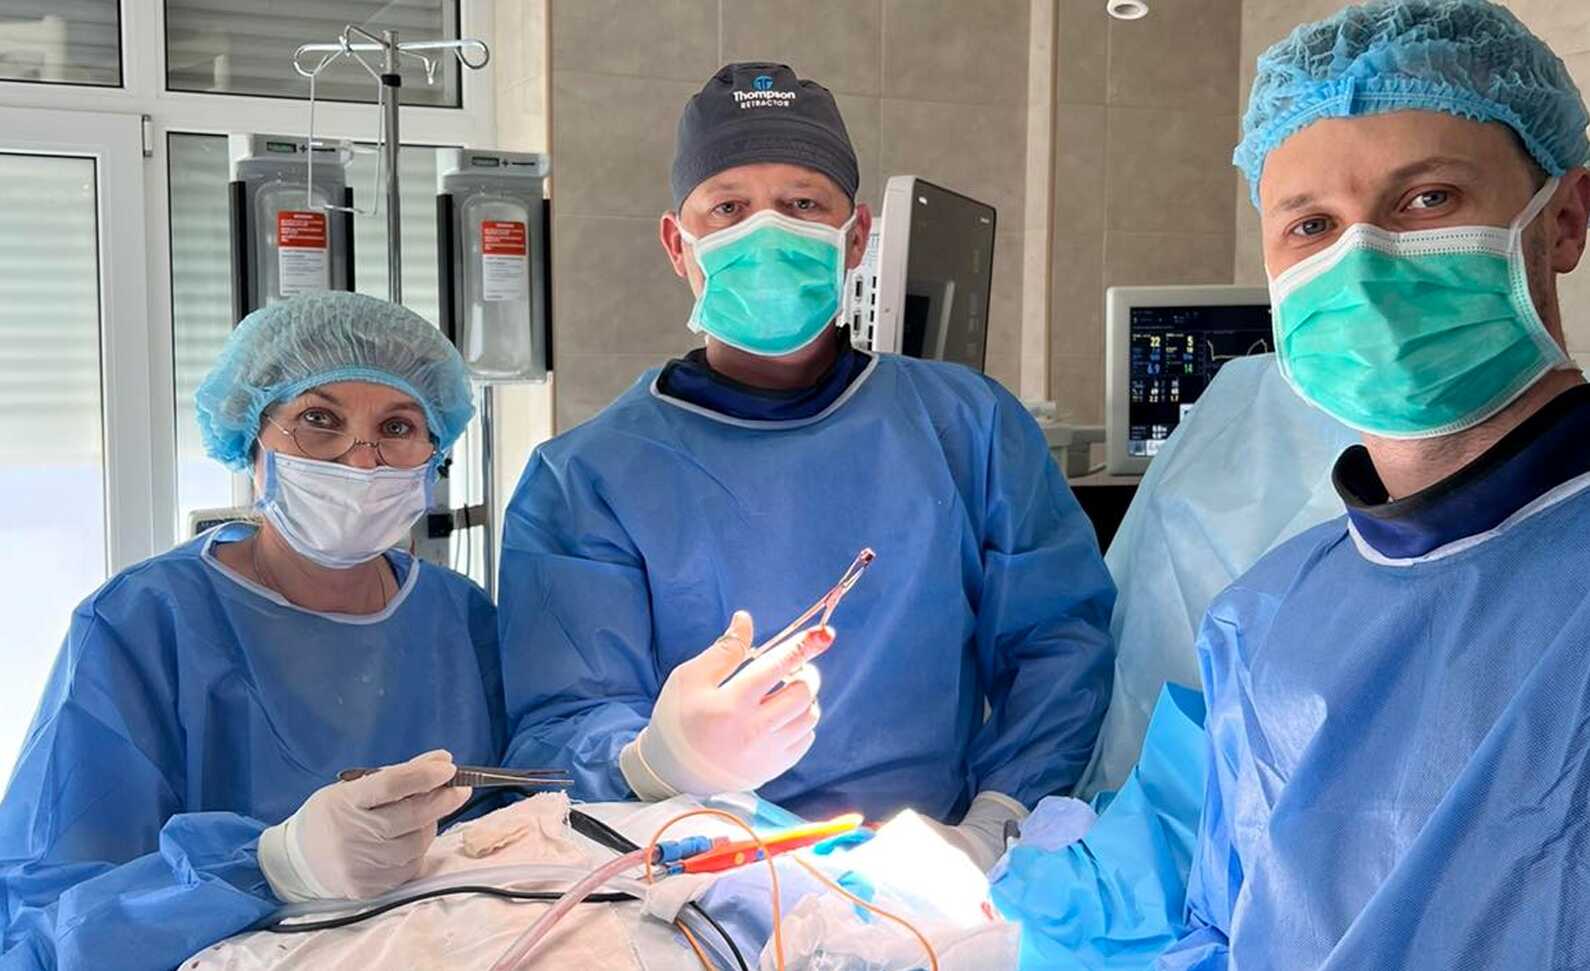 Застряг поруч із сонною артерією: медики Рівненської обласної лікарні дістали осколок із шиї бійця ЗСУ